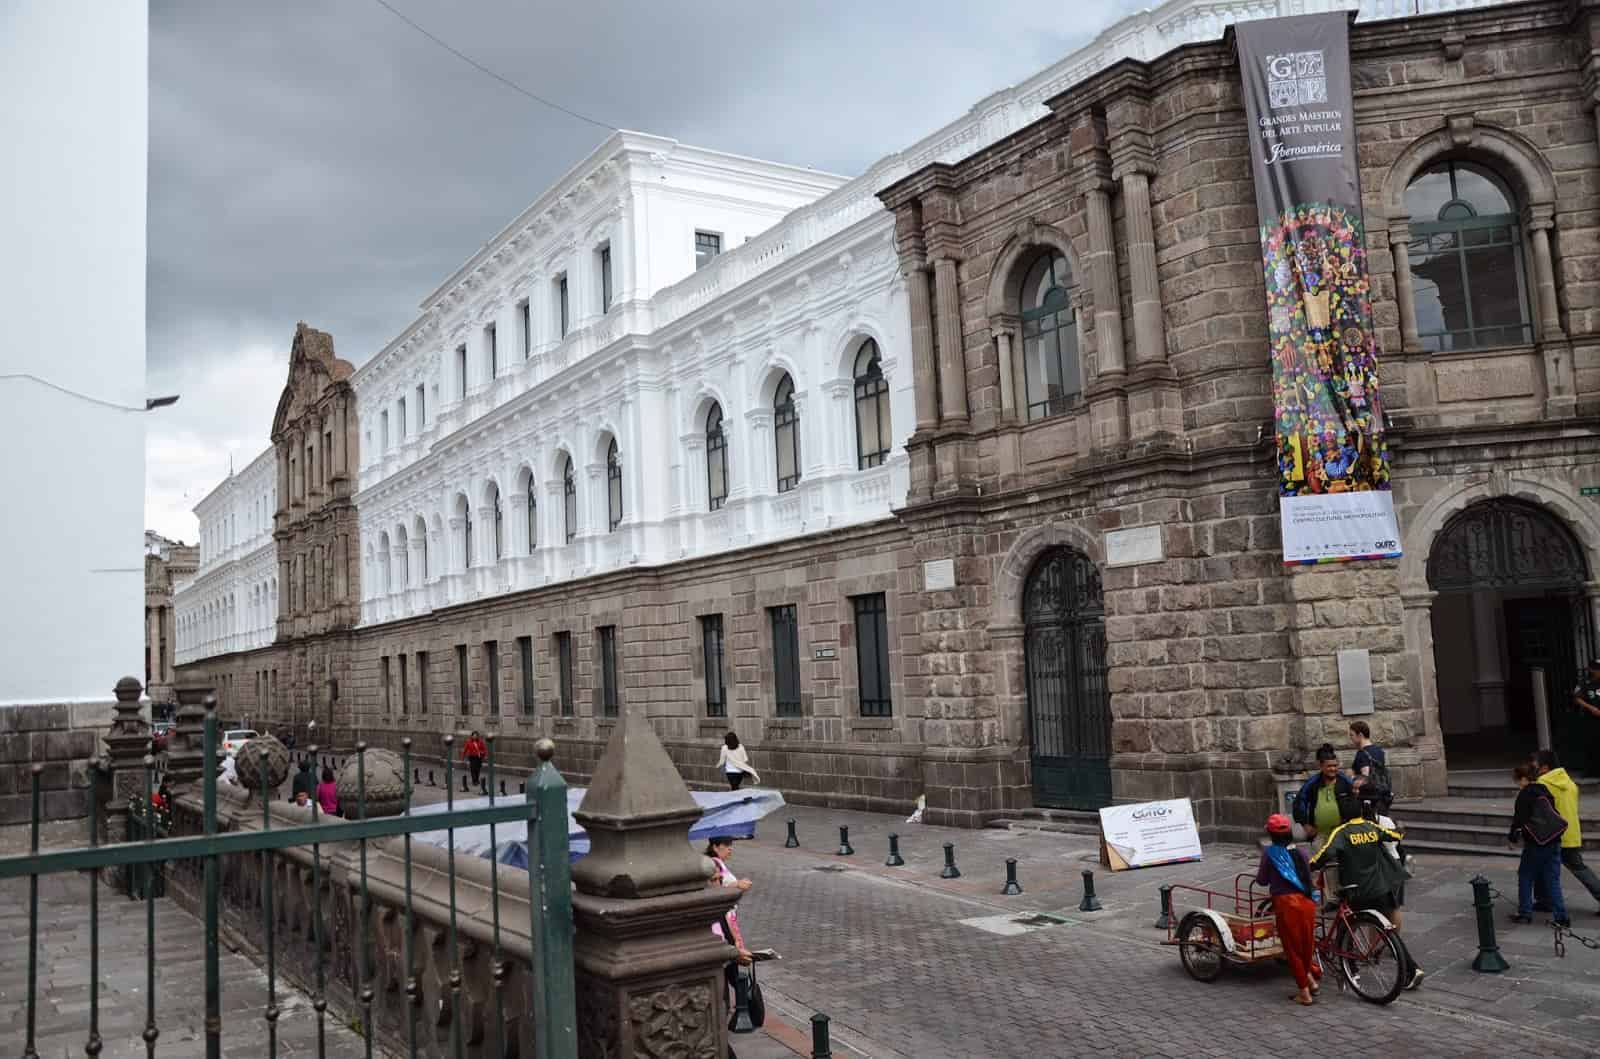 Metropolitan Cultural Center in Quito, Ecuador